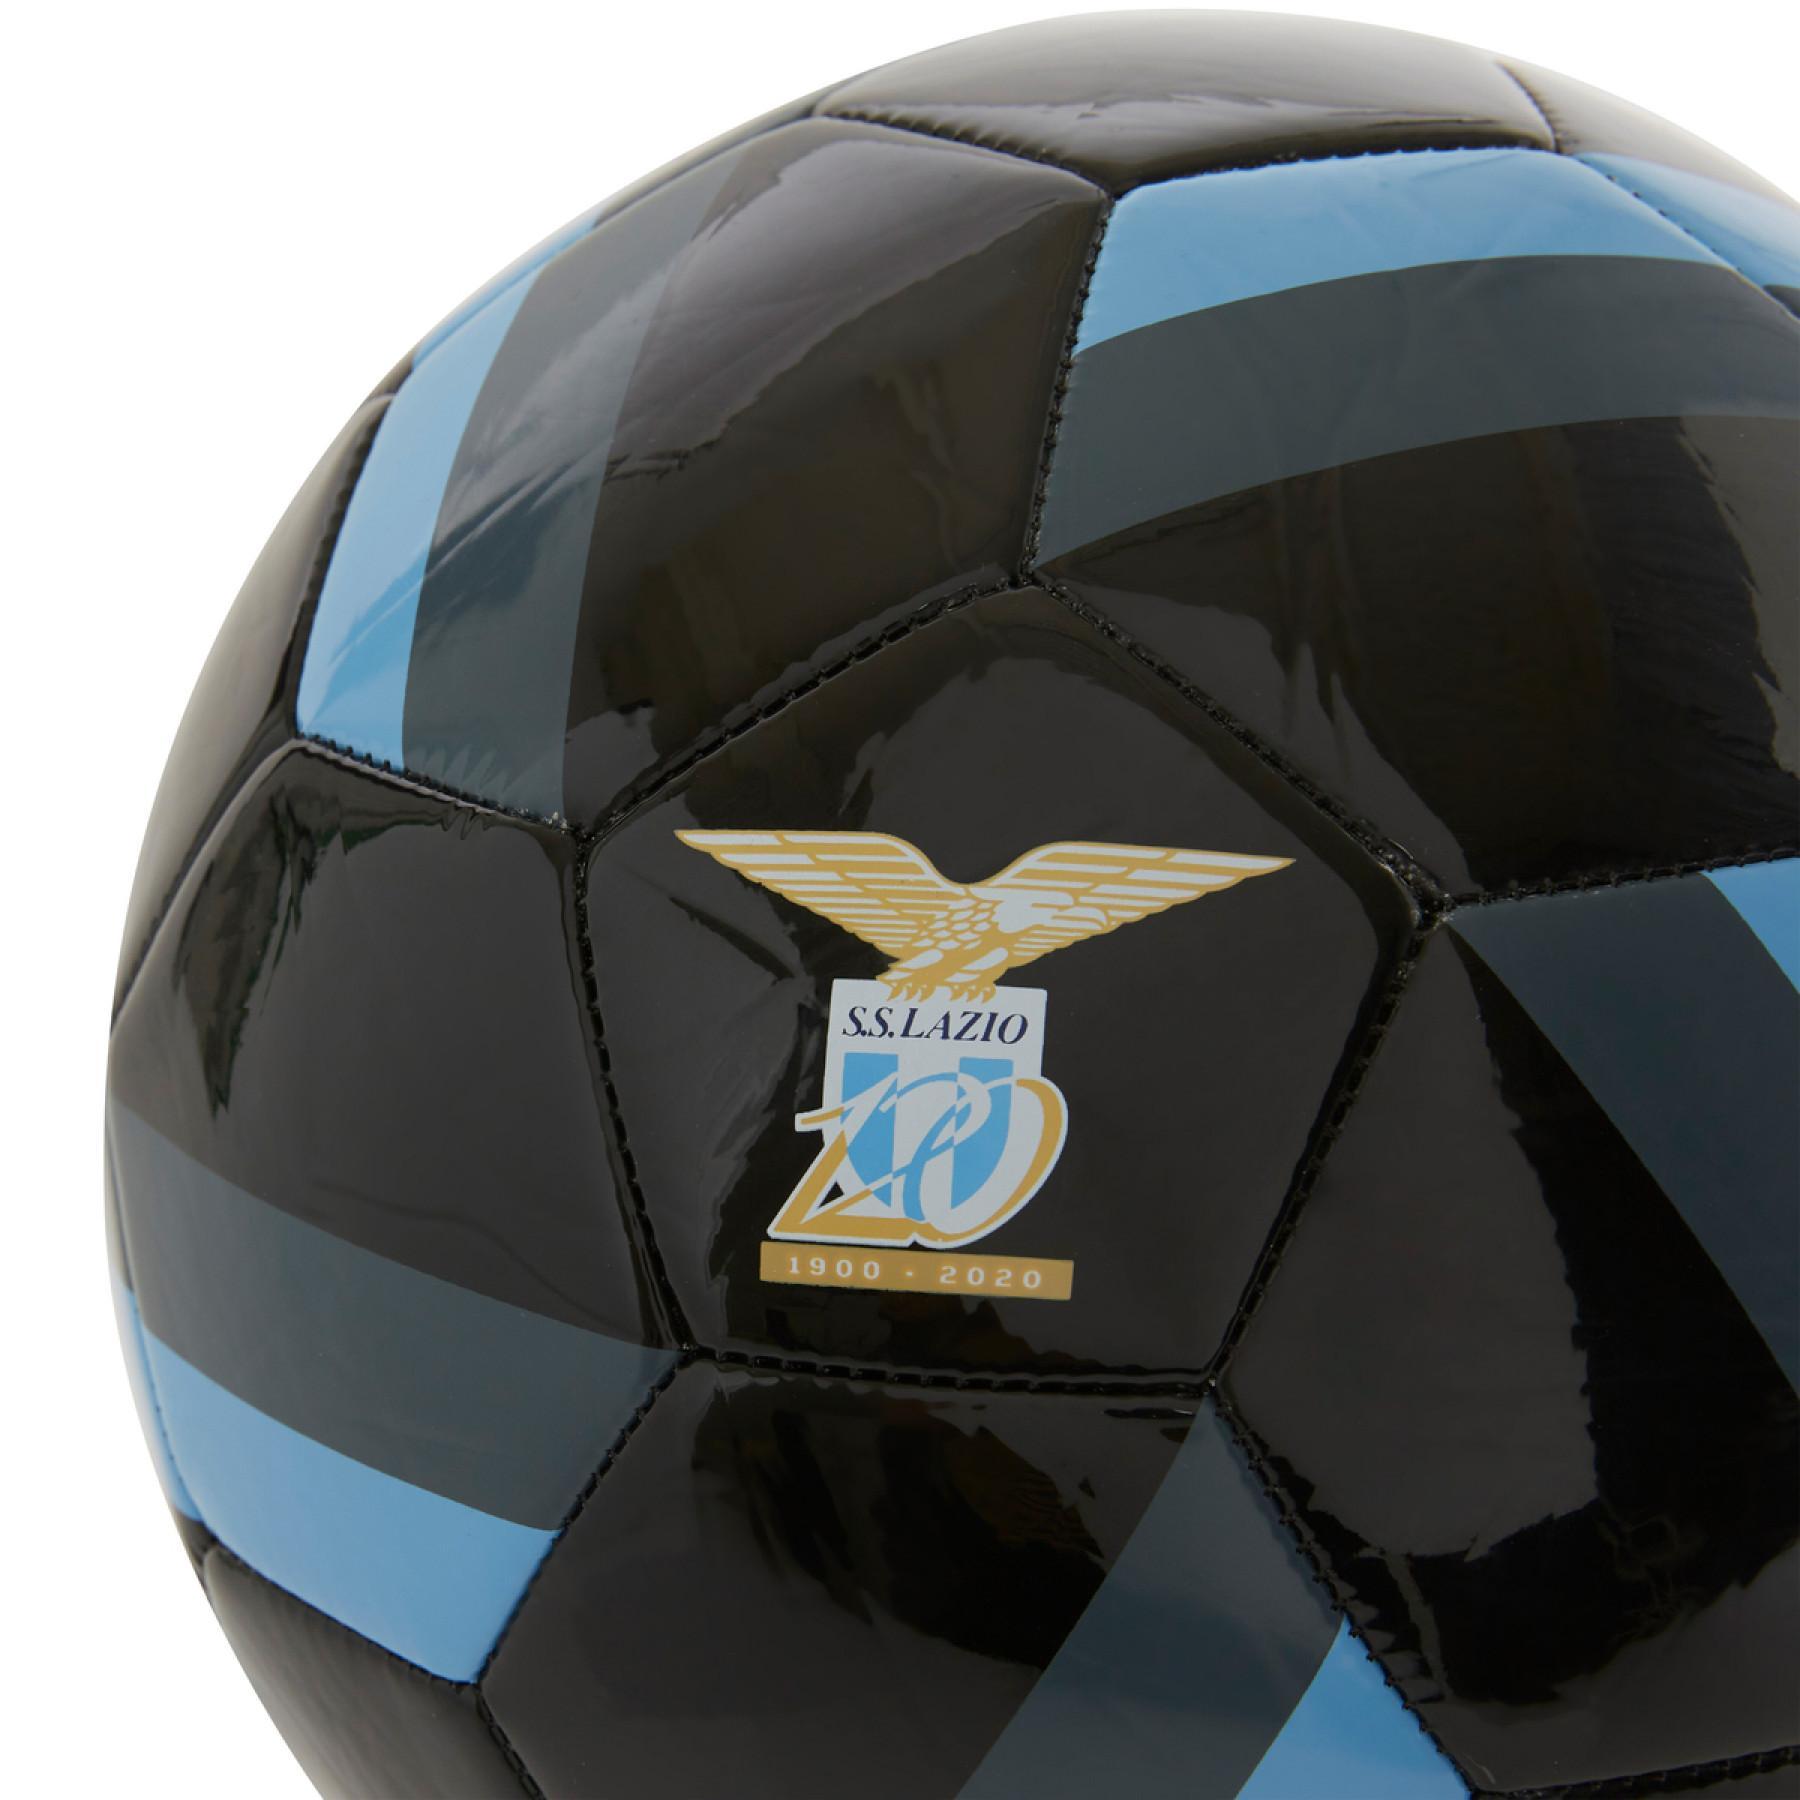 Balloon Lazio Rome ballon europa 2020/21